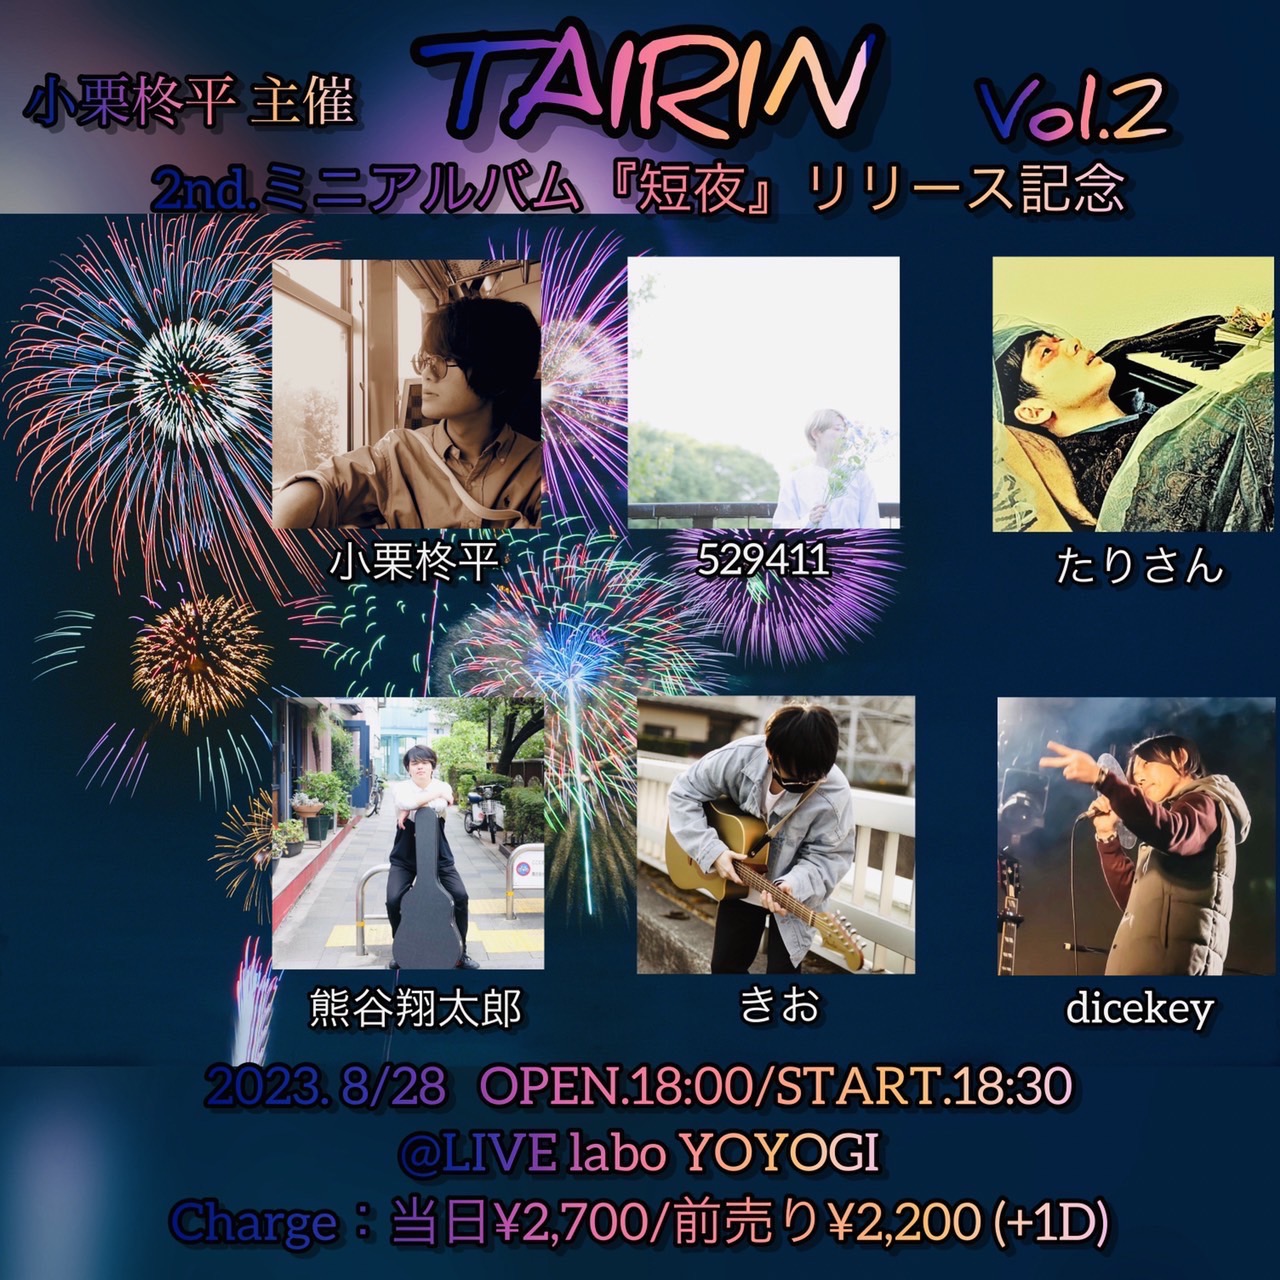 小栗柊平主催
TAIRIN Vol.2
2ndミニアルバム『短夜』リリース記念